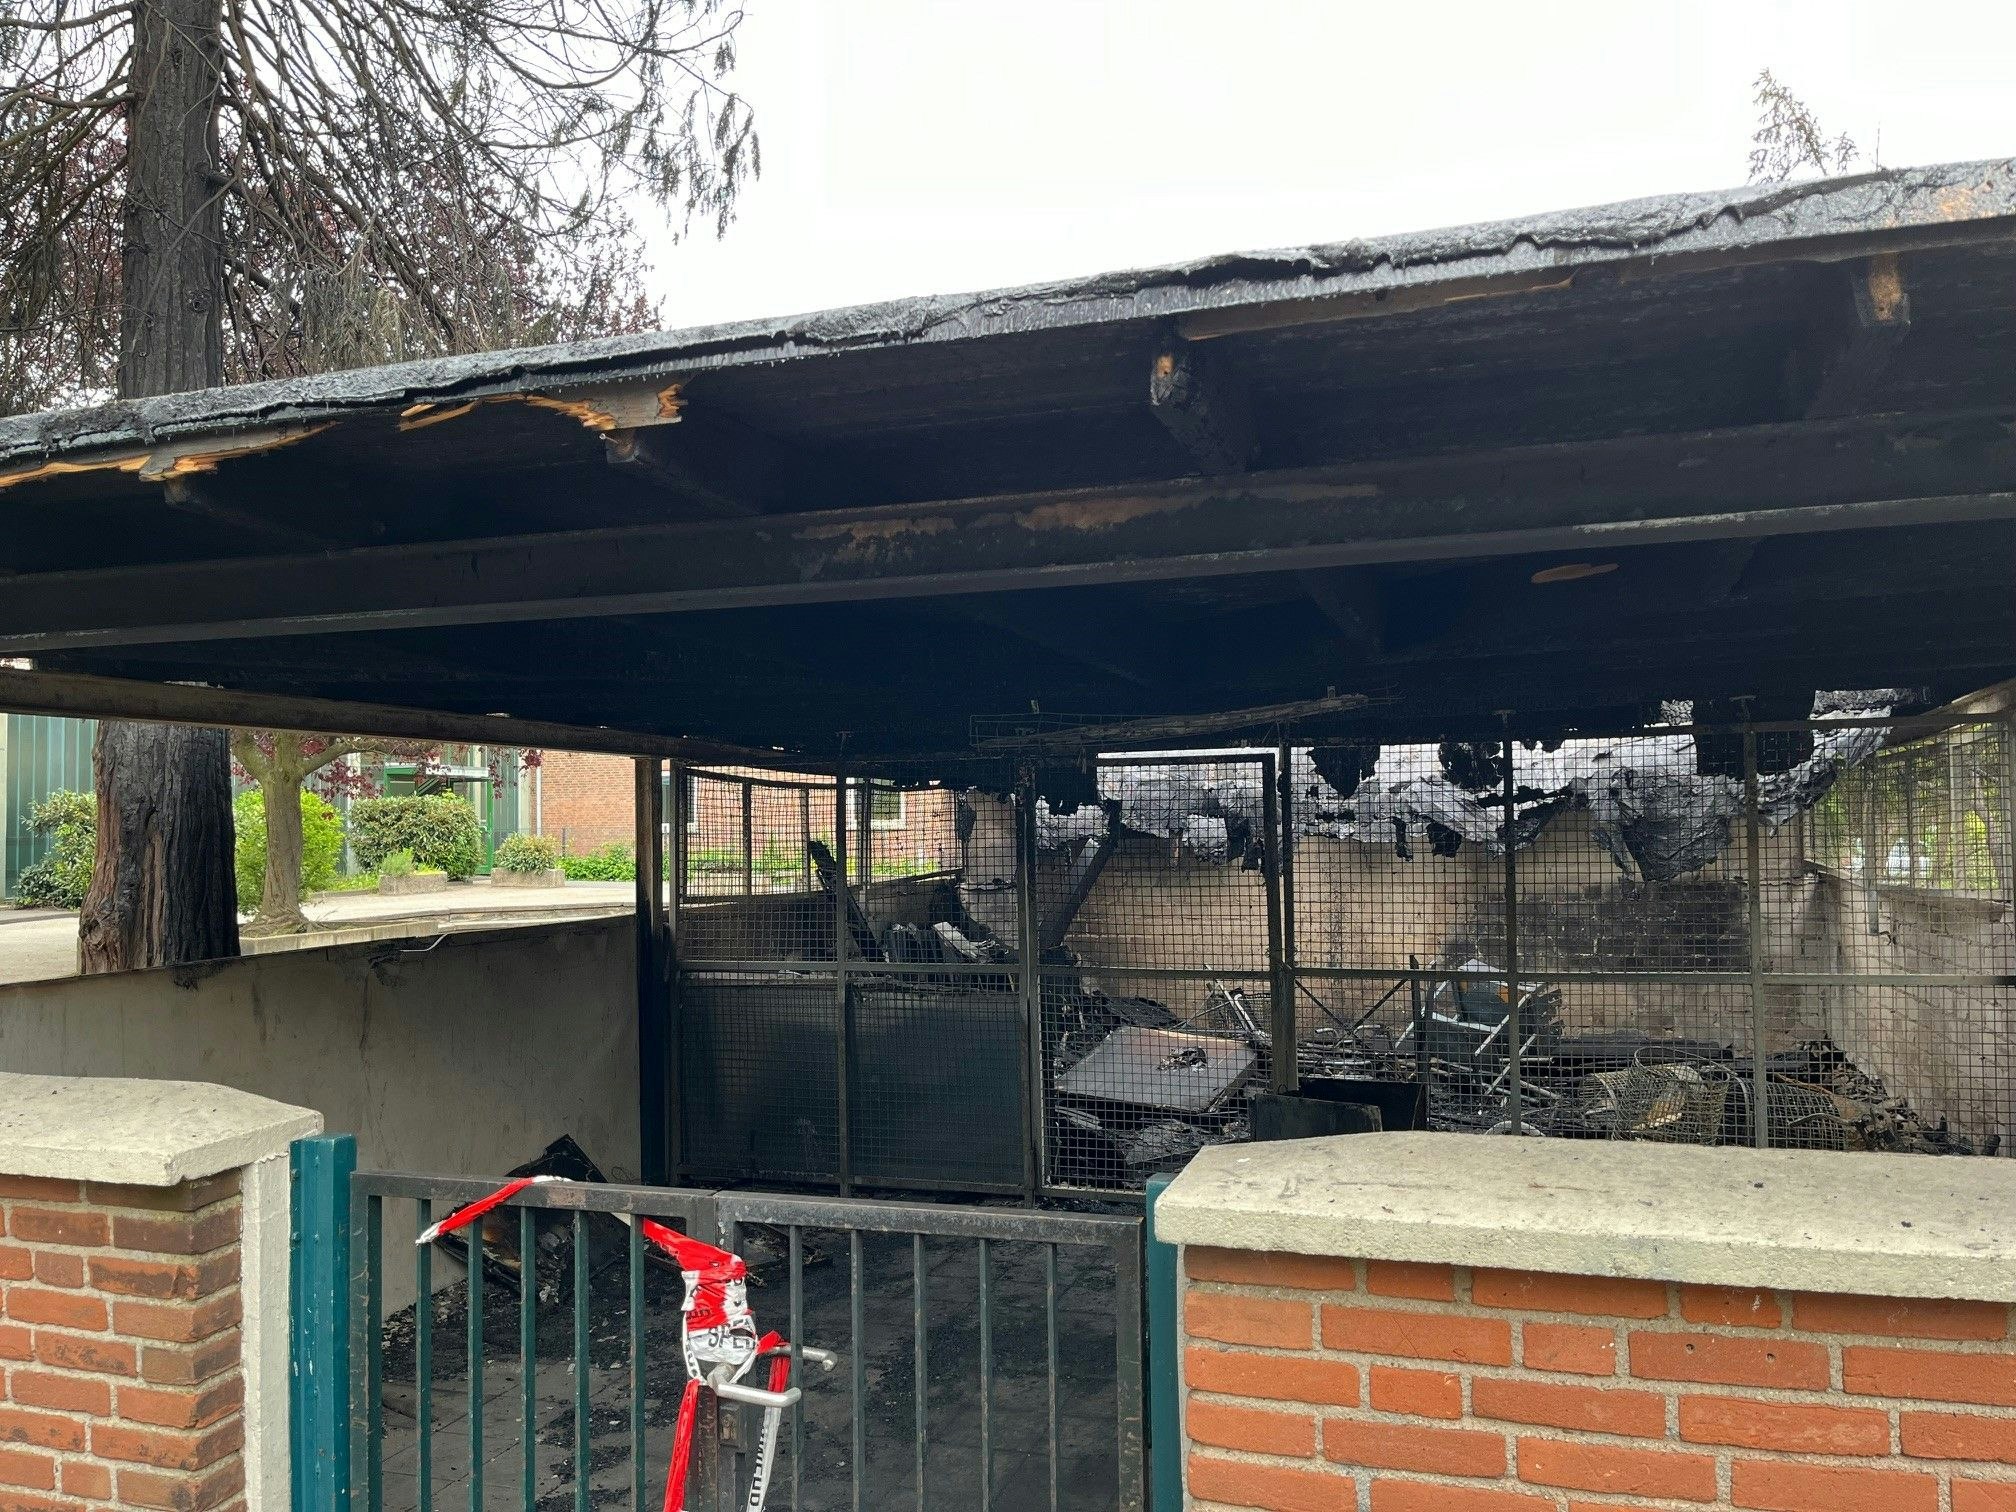 brandursache unklar: gebäude neben grundschule in köln-rodenkirchen abgebrannt